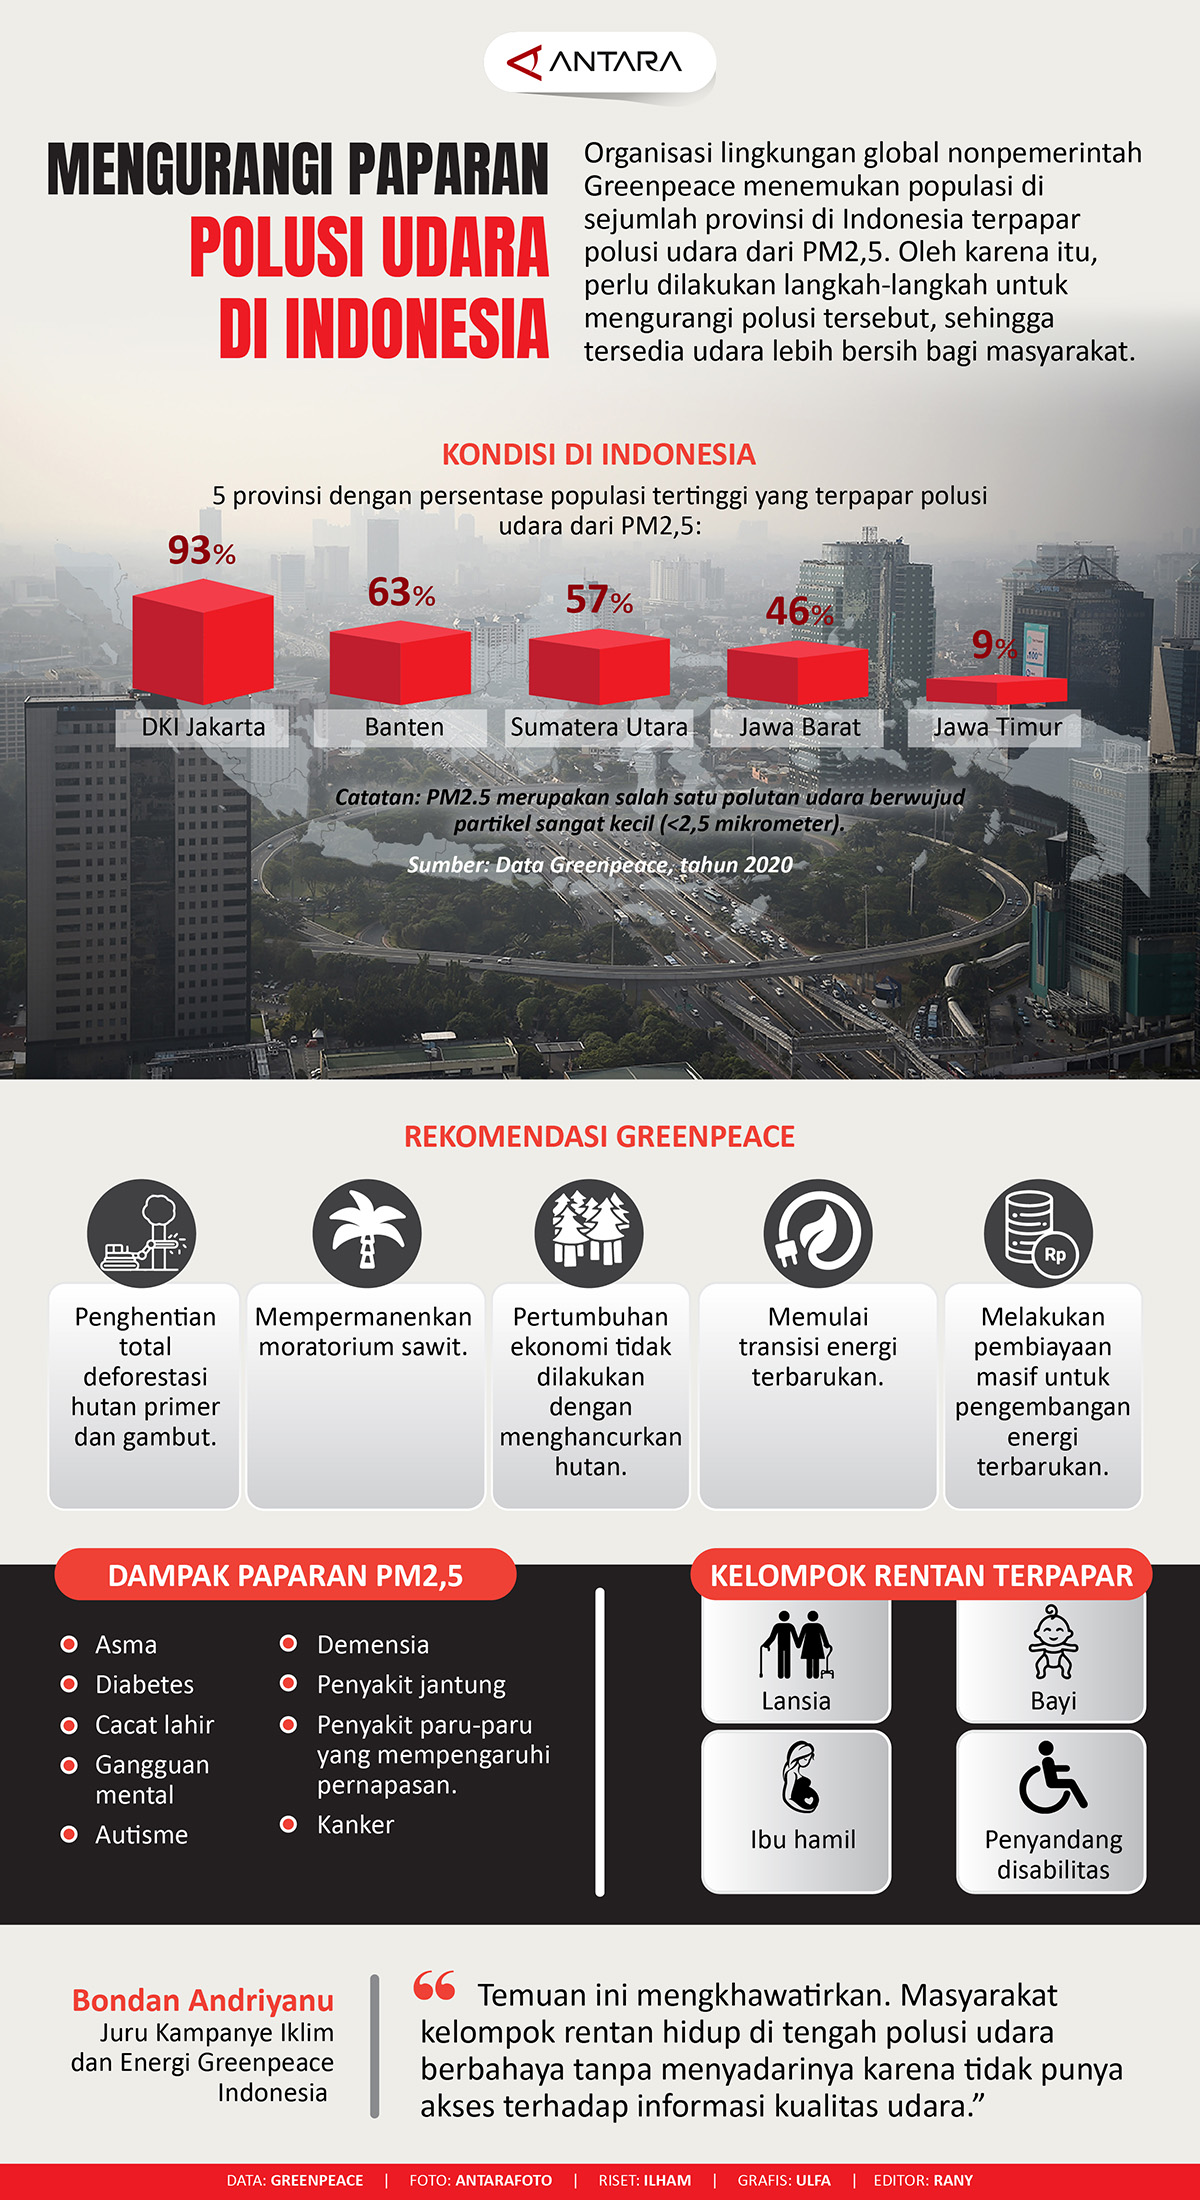 Mengurangi paparan polusi udara di Indonesia